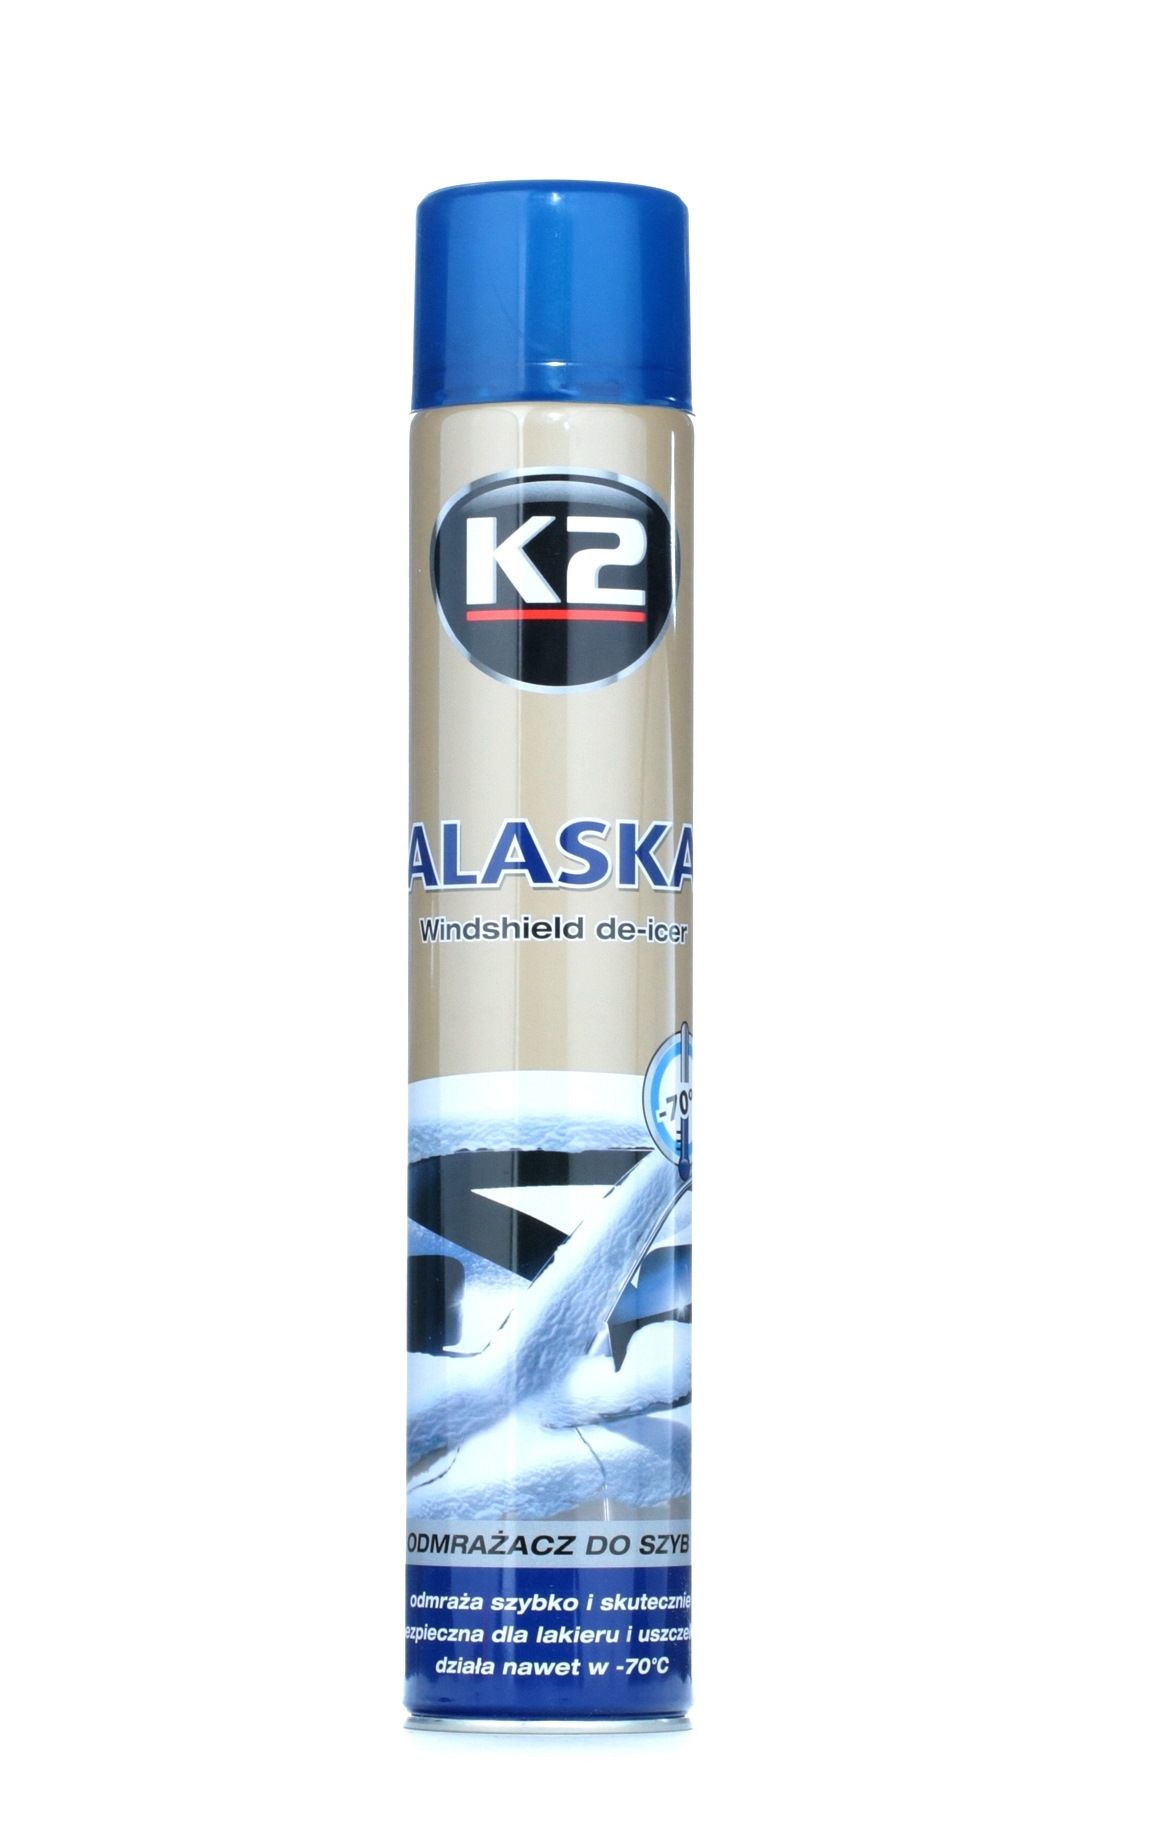 Image of K2 Spray antighiaccio K608 Spray antigelo per vetri auto,Spray antighiaccio vetri,Spray antighiaccio vetri auto